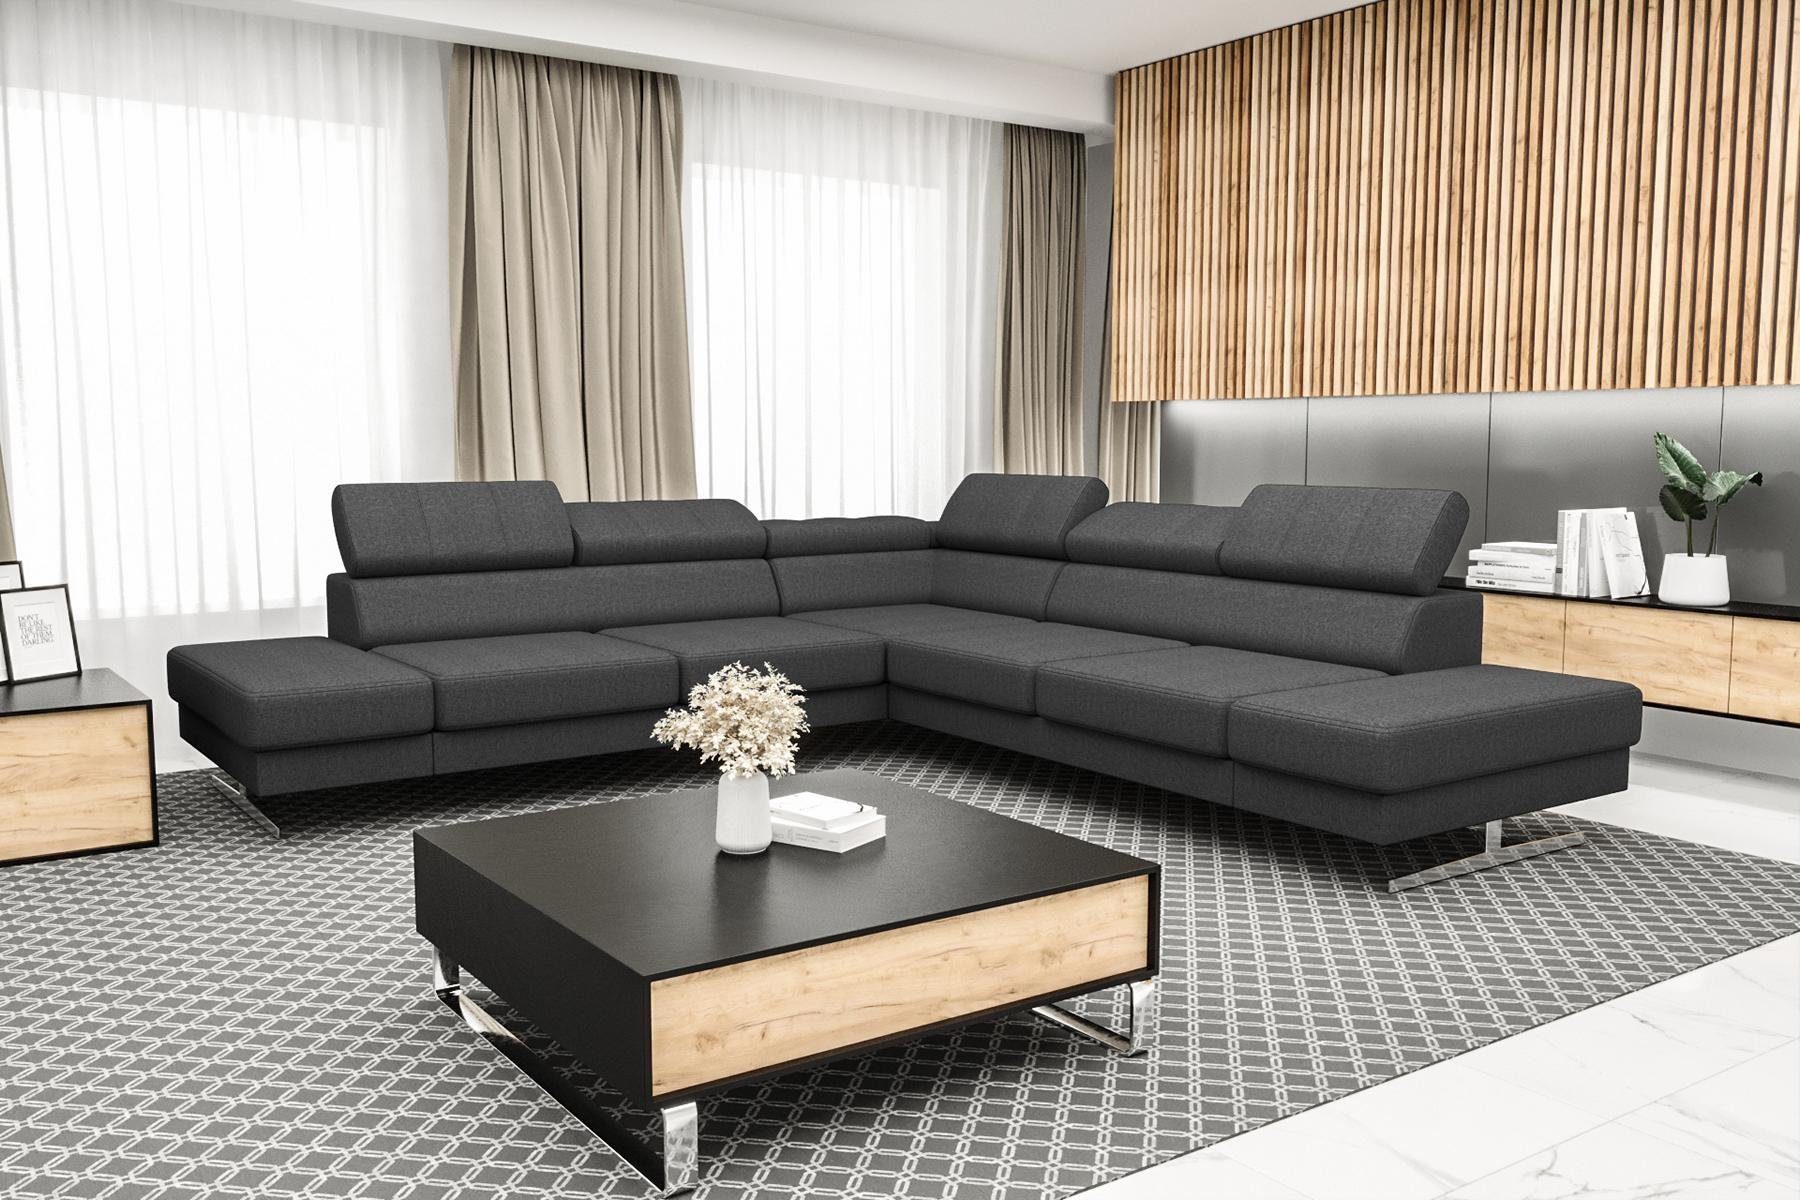 JVmoebel Ecksofa Designer Schwarzes L-Form Luxus Sofa Wohnzimmer Couch Textil, Made in Europe Grau